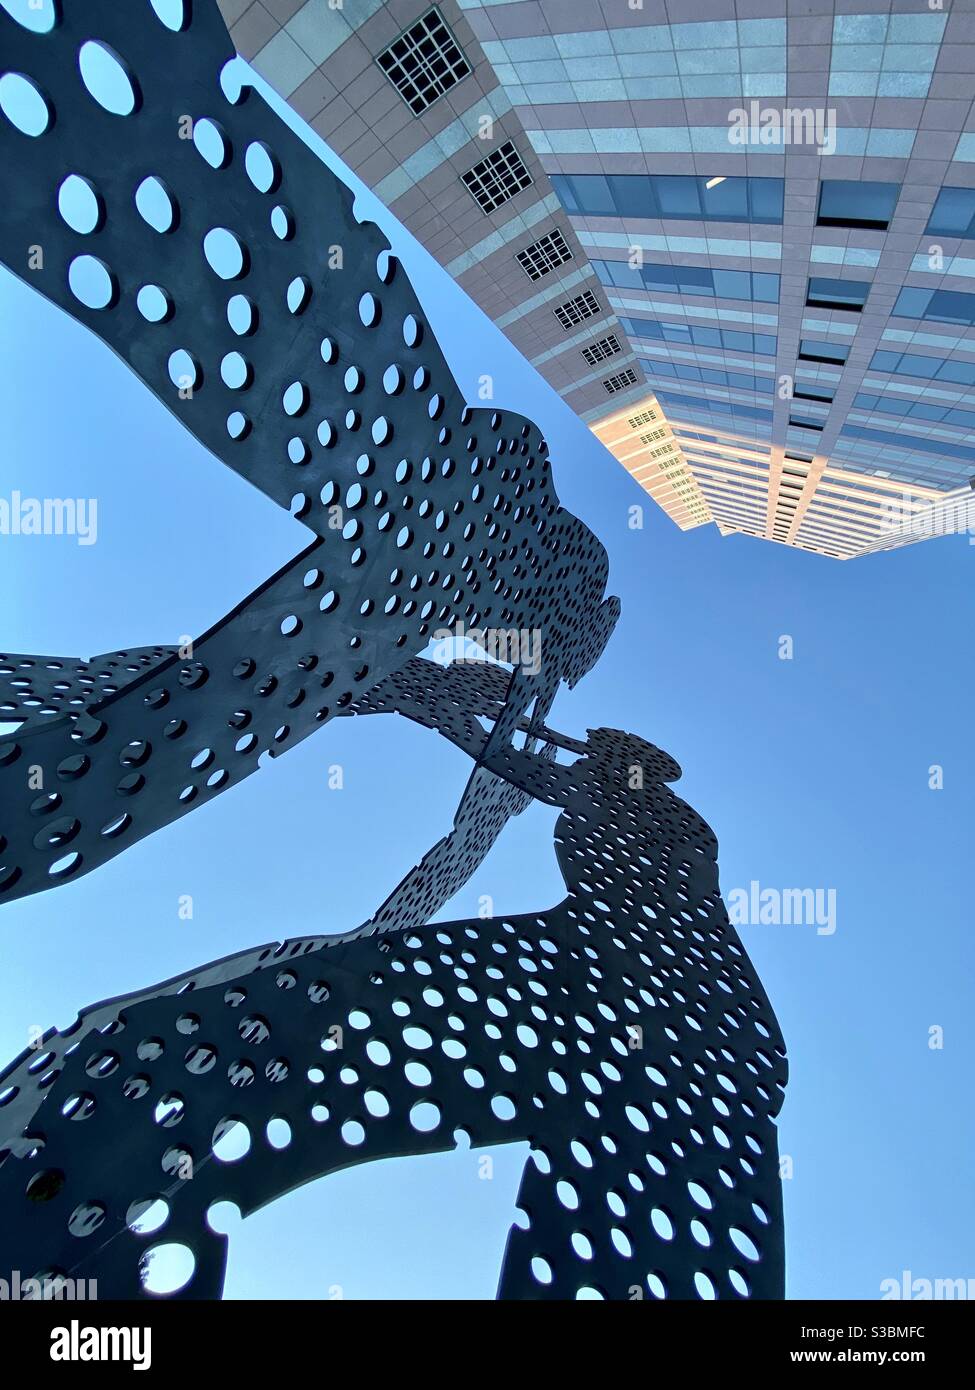 LOS ANGELES, CA, 2020. AUGUST: Downtown, Blick von unten zeigt die Skala von Molecule man, drei riesige menschliche Aluminiumformen mit Löchern, die Moleküle darstellen, entworfen vom amerikanischen Künstler Jonathan Borofsky Stockfoto